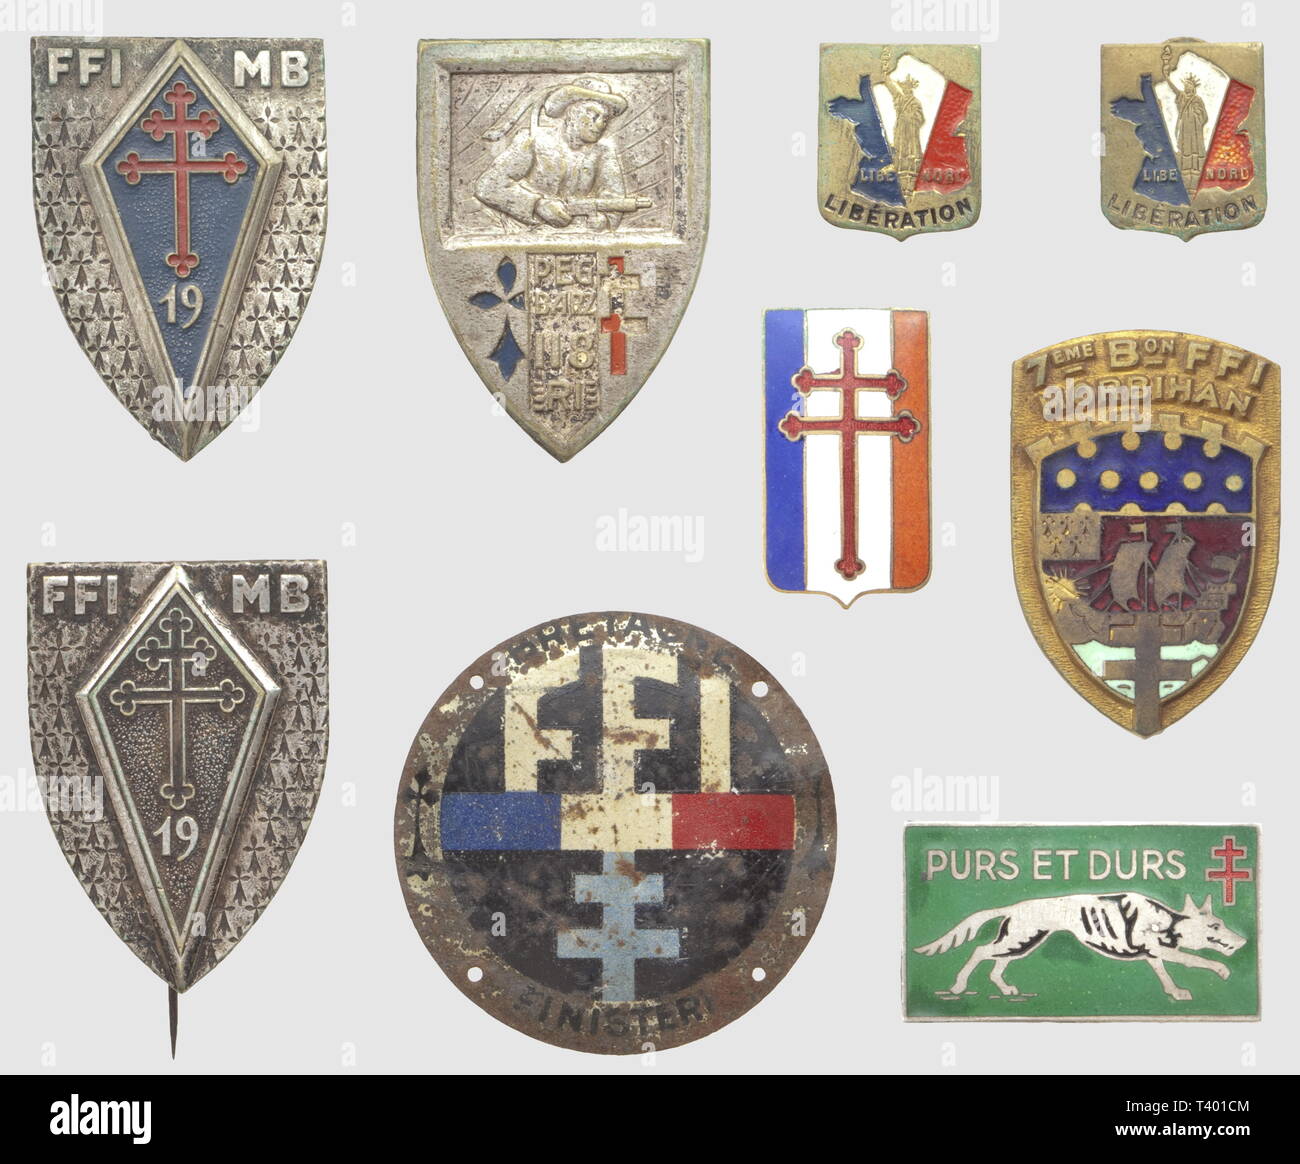 La resistenza delle forze ET FRANCAISES LIBRES, Lot de neuf insignes métalliques, comprenant l'insigne du 7ème battaglione FFI du Morbihan émaillé (AB poincon sur boléro), l'insigne peint sur métal pesanti de la 19ème divisione d'Infanterie FFI du Morbihan (dos lisse, SNF), l'insigne peint du 1er modèle du 118ème RI de la 19ème DI ("Peg Barz', il dottor Bér. & Déposé, éclats de peinture, Onu anneau manquant), l'insigne des FFI du Finistère en métal léger peint (emboutissage de conserverie réalisé par la Société métallurgique de Douarnenez, modèle à 4 trous à coudre, Additional-Rights-Clearance-Info-Not-Available Foto Stock